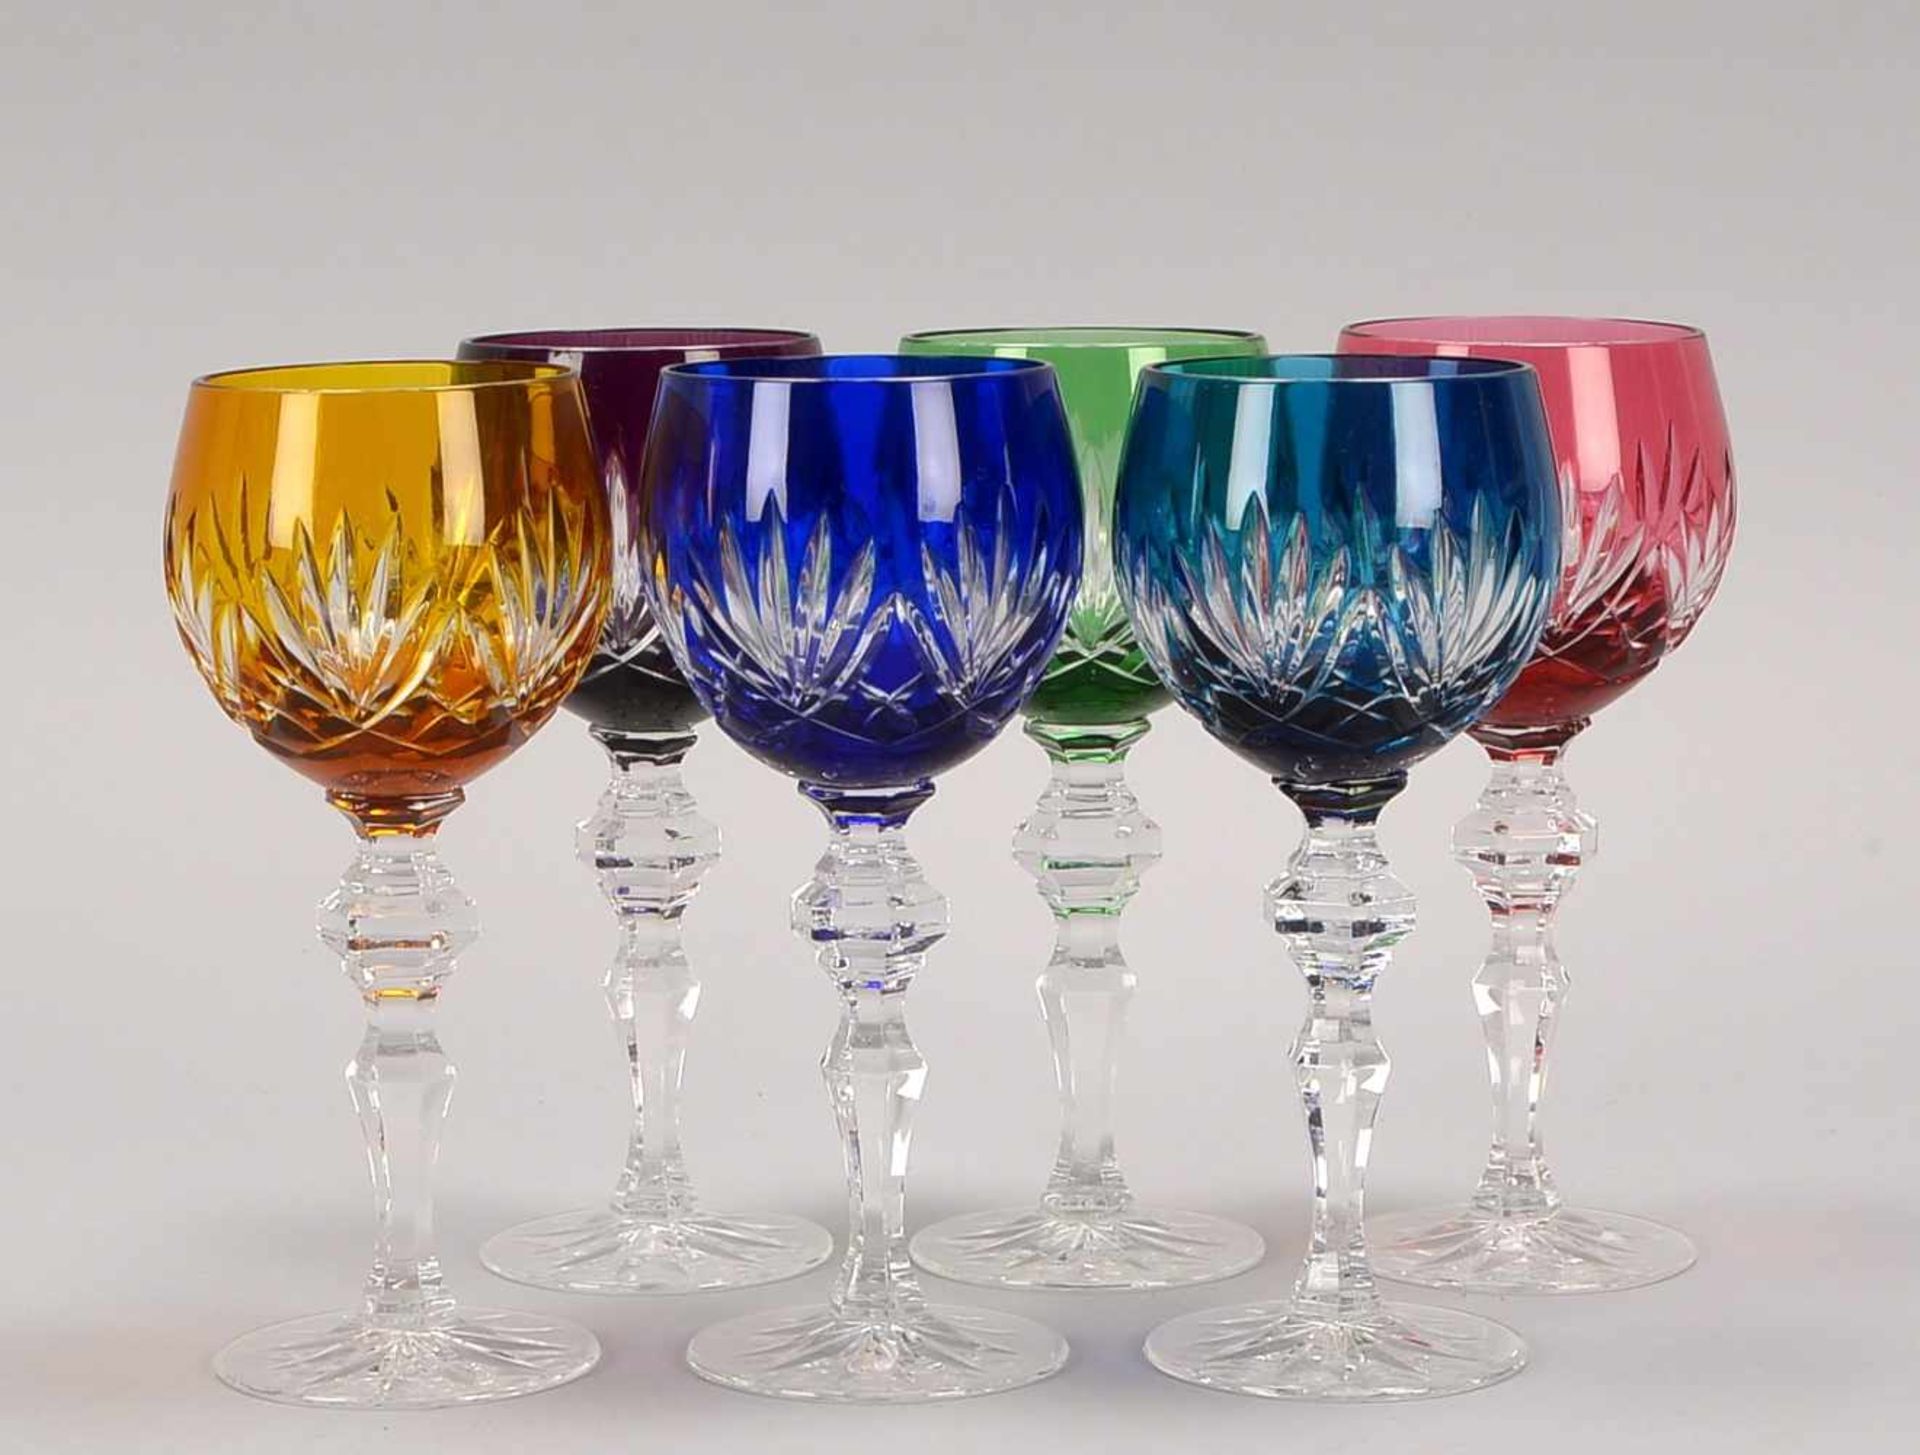 Satz Glasrömer, Kristallglas geschliffen, verschiedenfarbig, 6 Stück; Höhe 19 cm